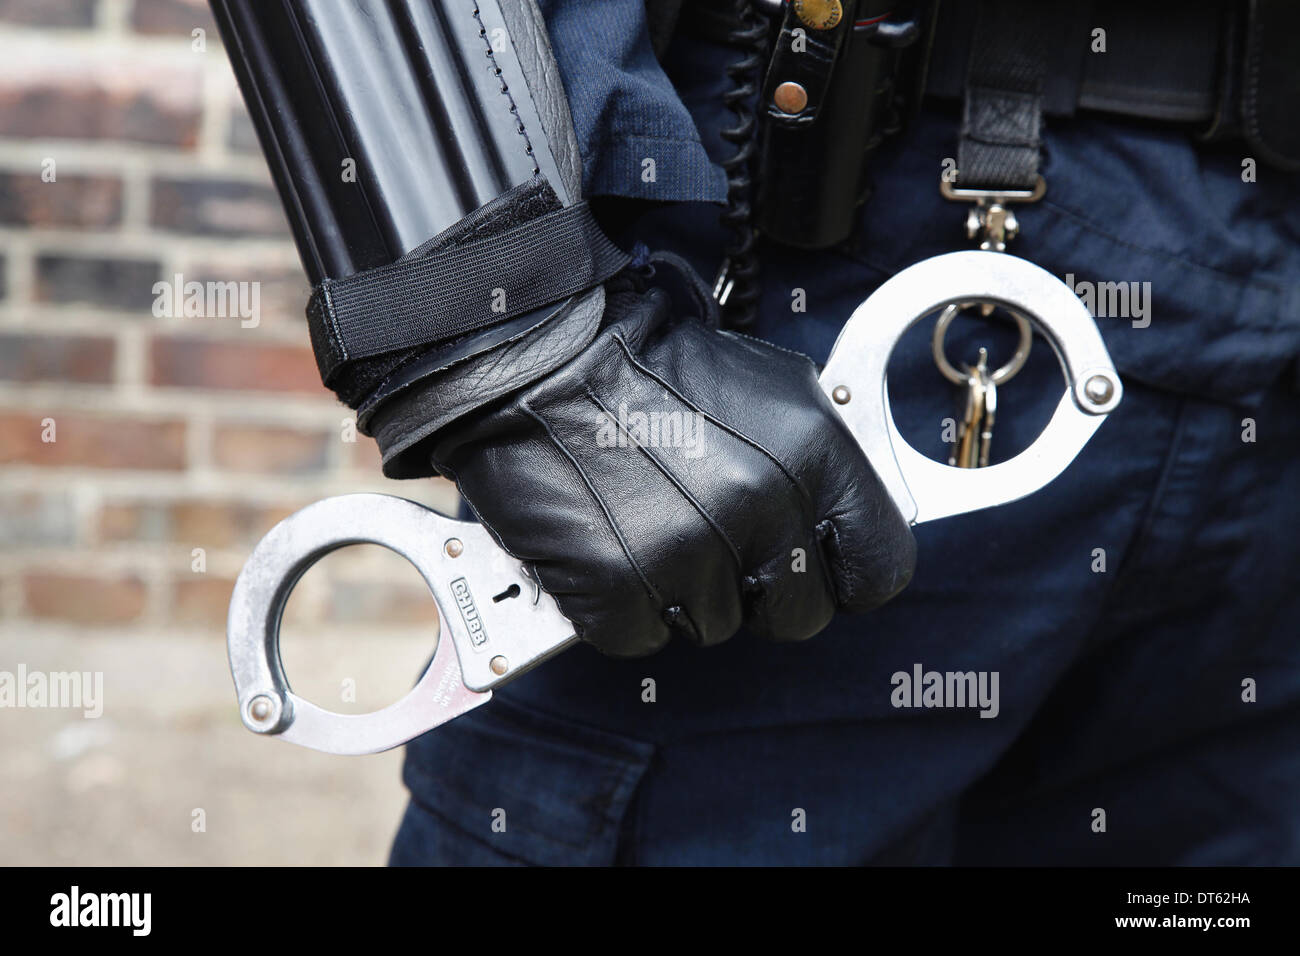 Inghilterra, la società, la legge e l Ordine, dettaglio della polizia legge officer indossare giubbotti antiproiettile e tenendo le manette. Foto Stock